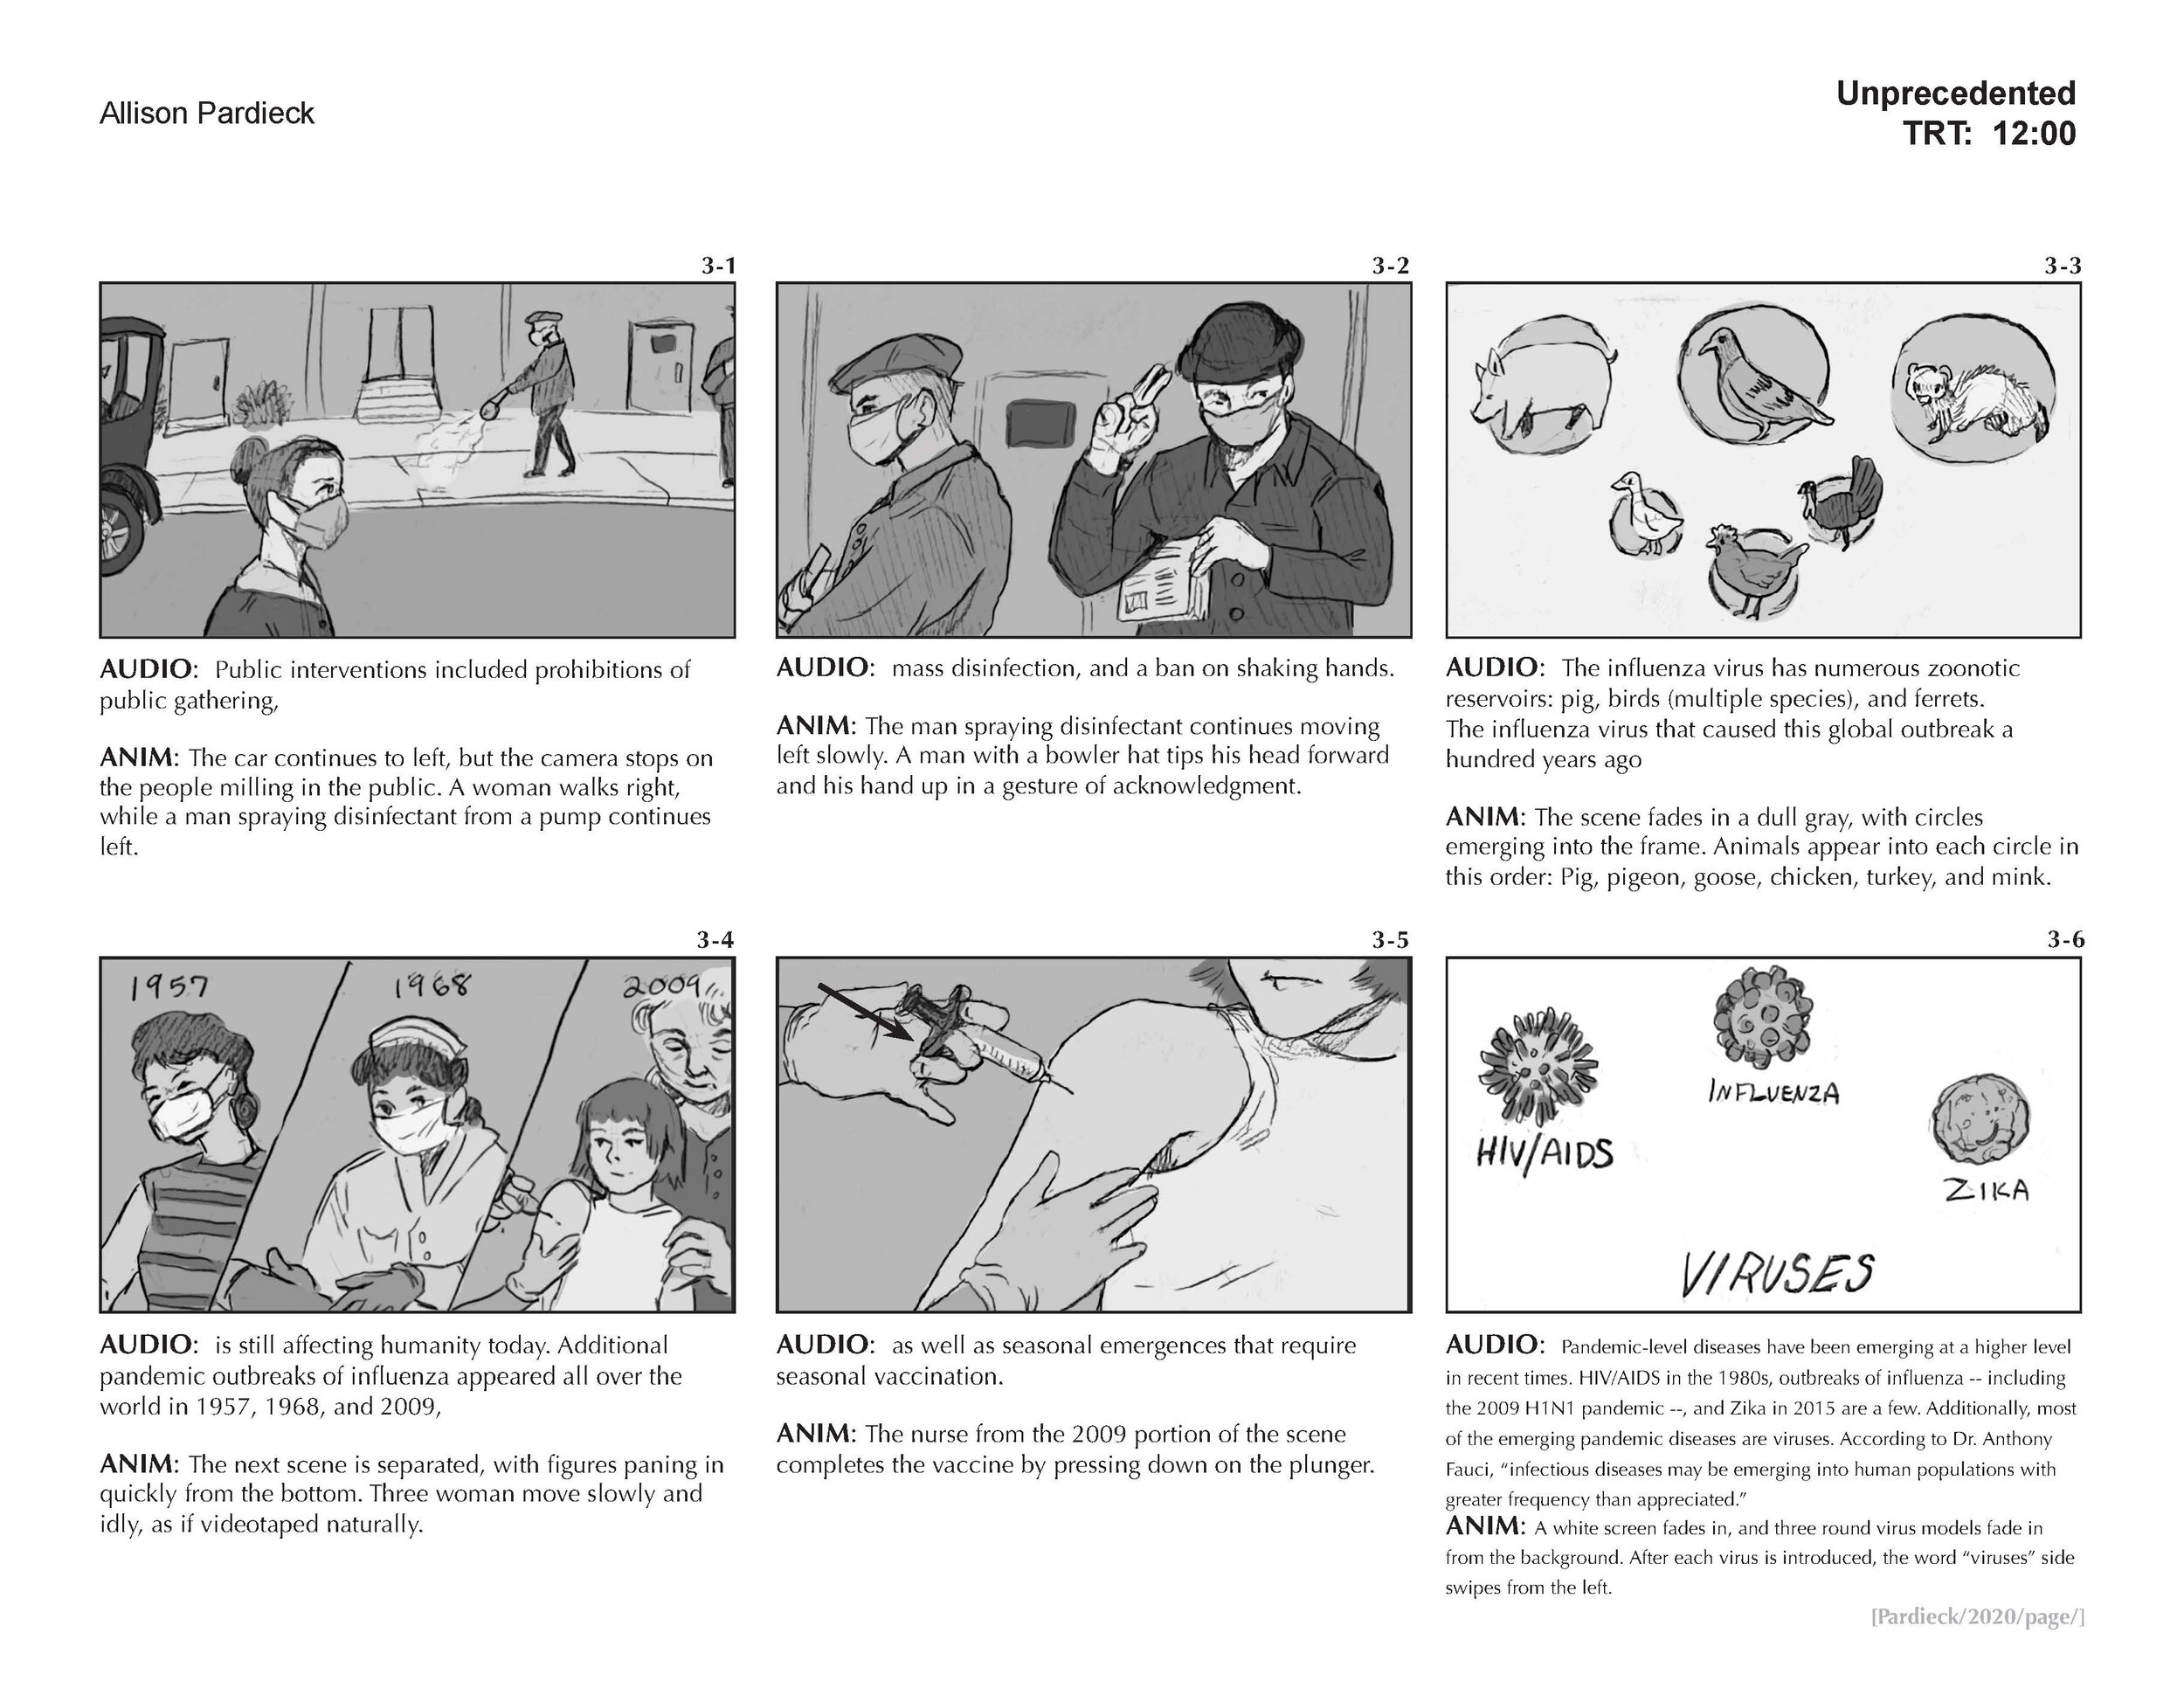 "Unprecedented" Storyboard (page 3)